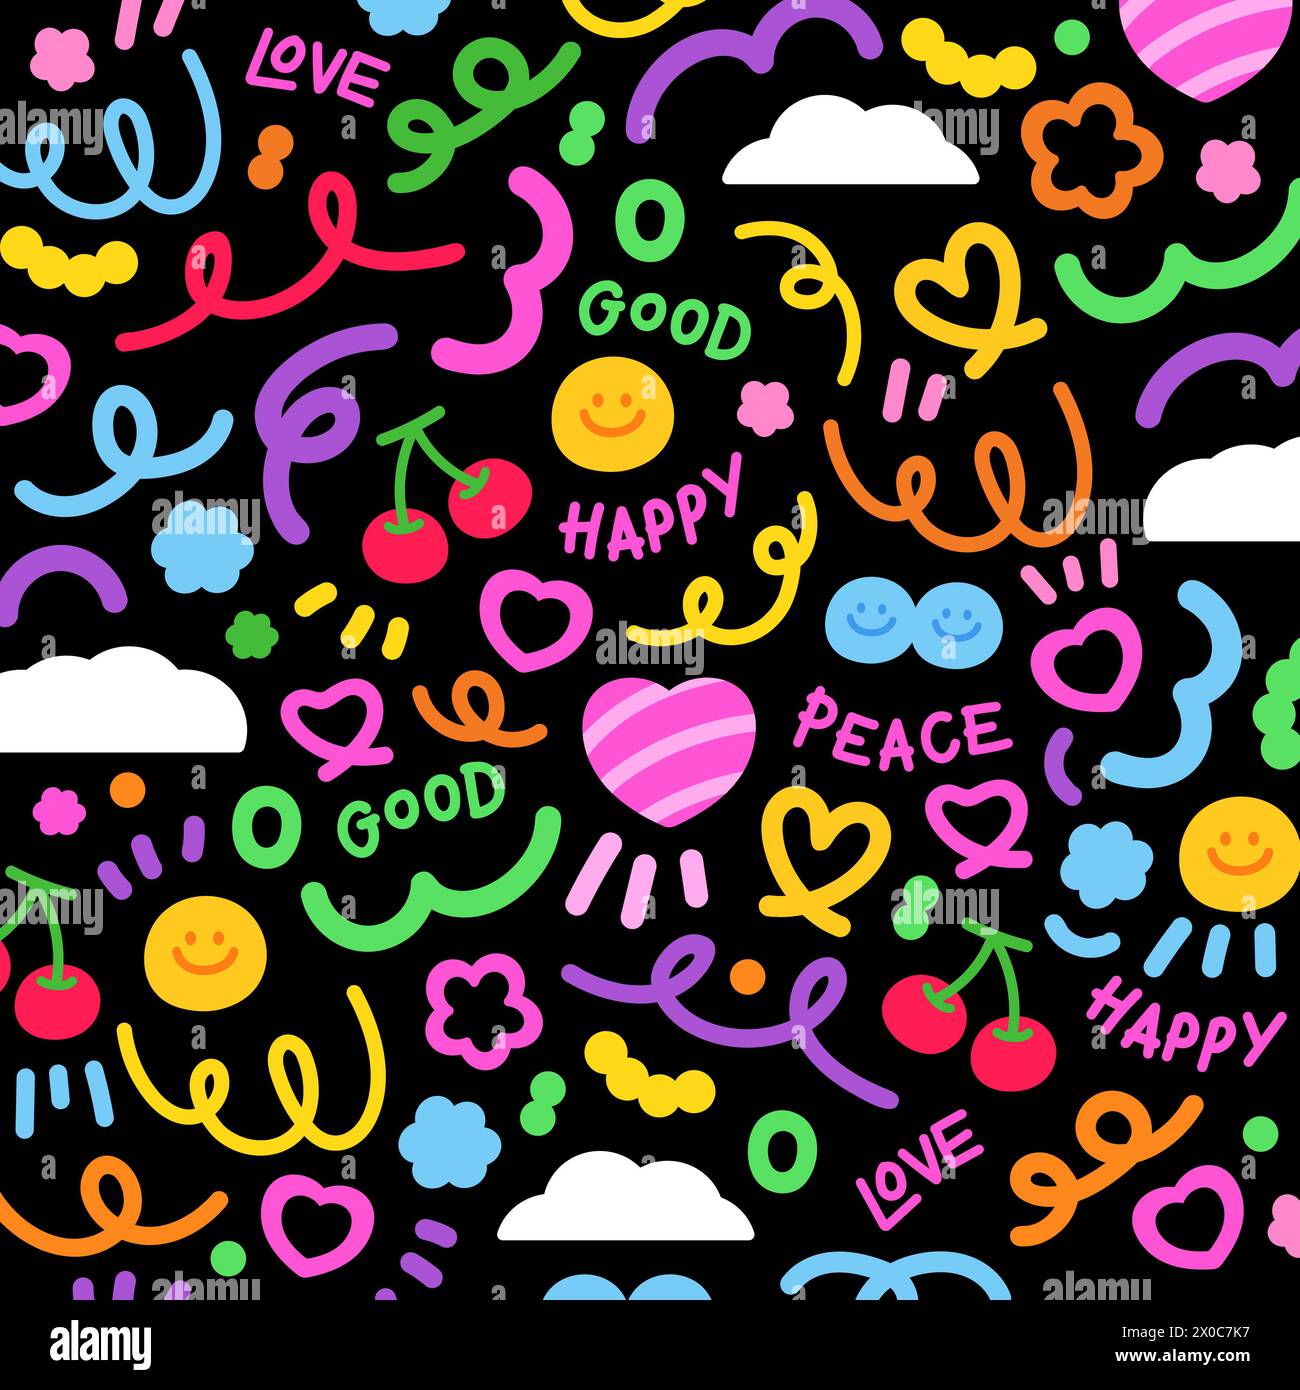 Éléments colorés de doodles abstraits, coeur, cerise, fleurs, confettis et nuage pour fond, papier peint, autocollant, logo, icônes, motif Illustration de Vecteur